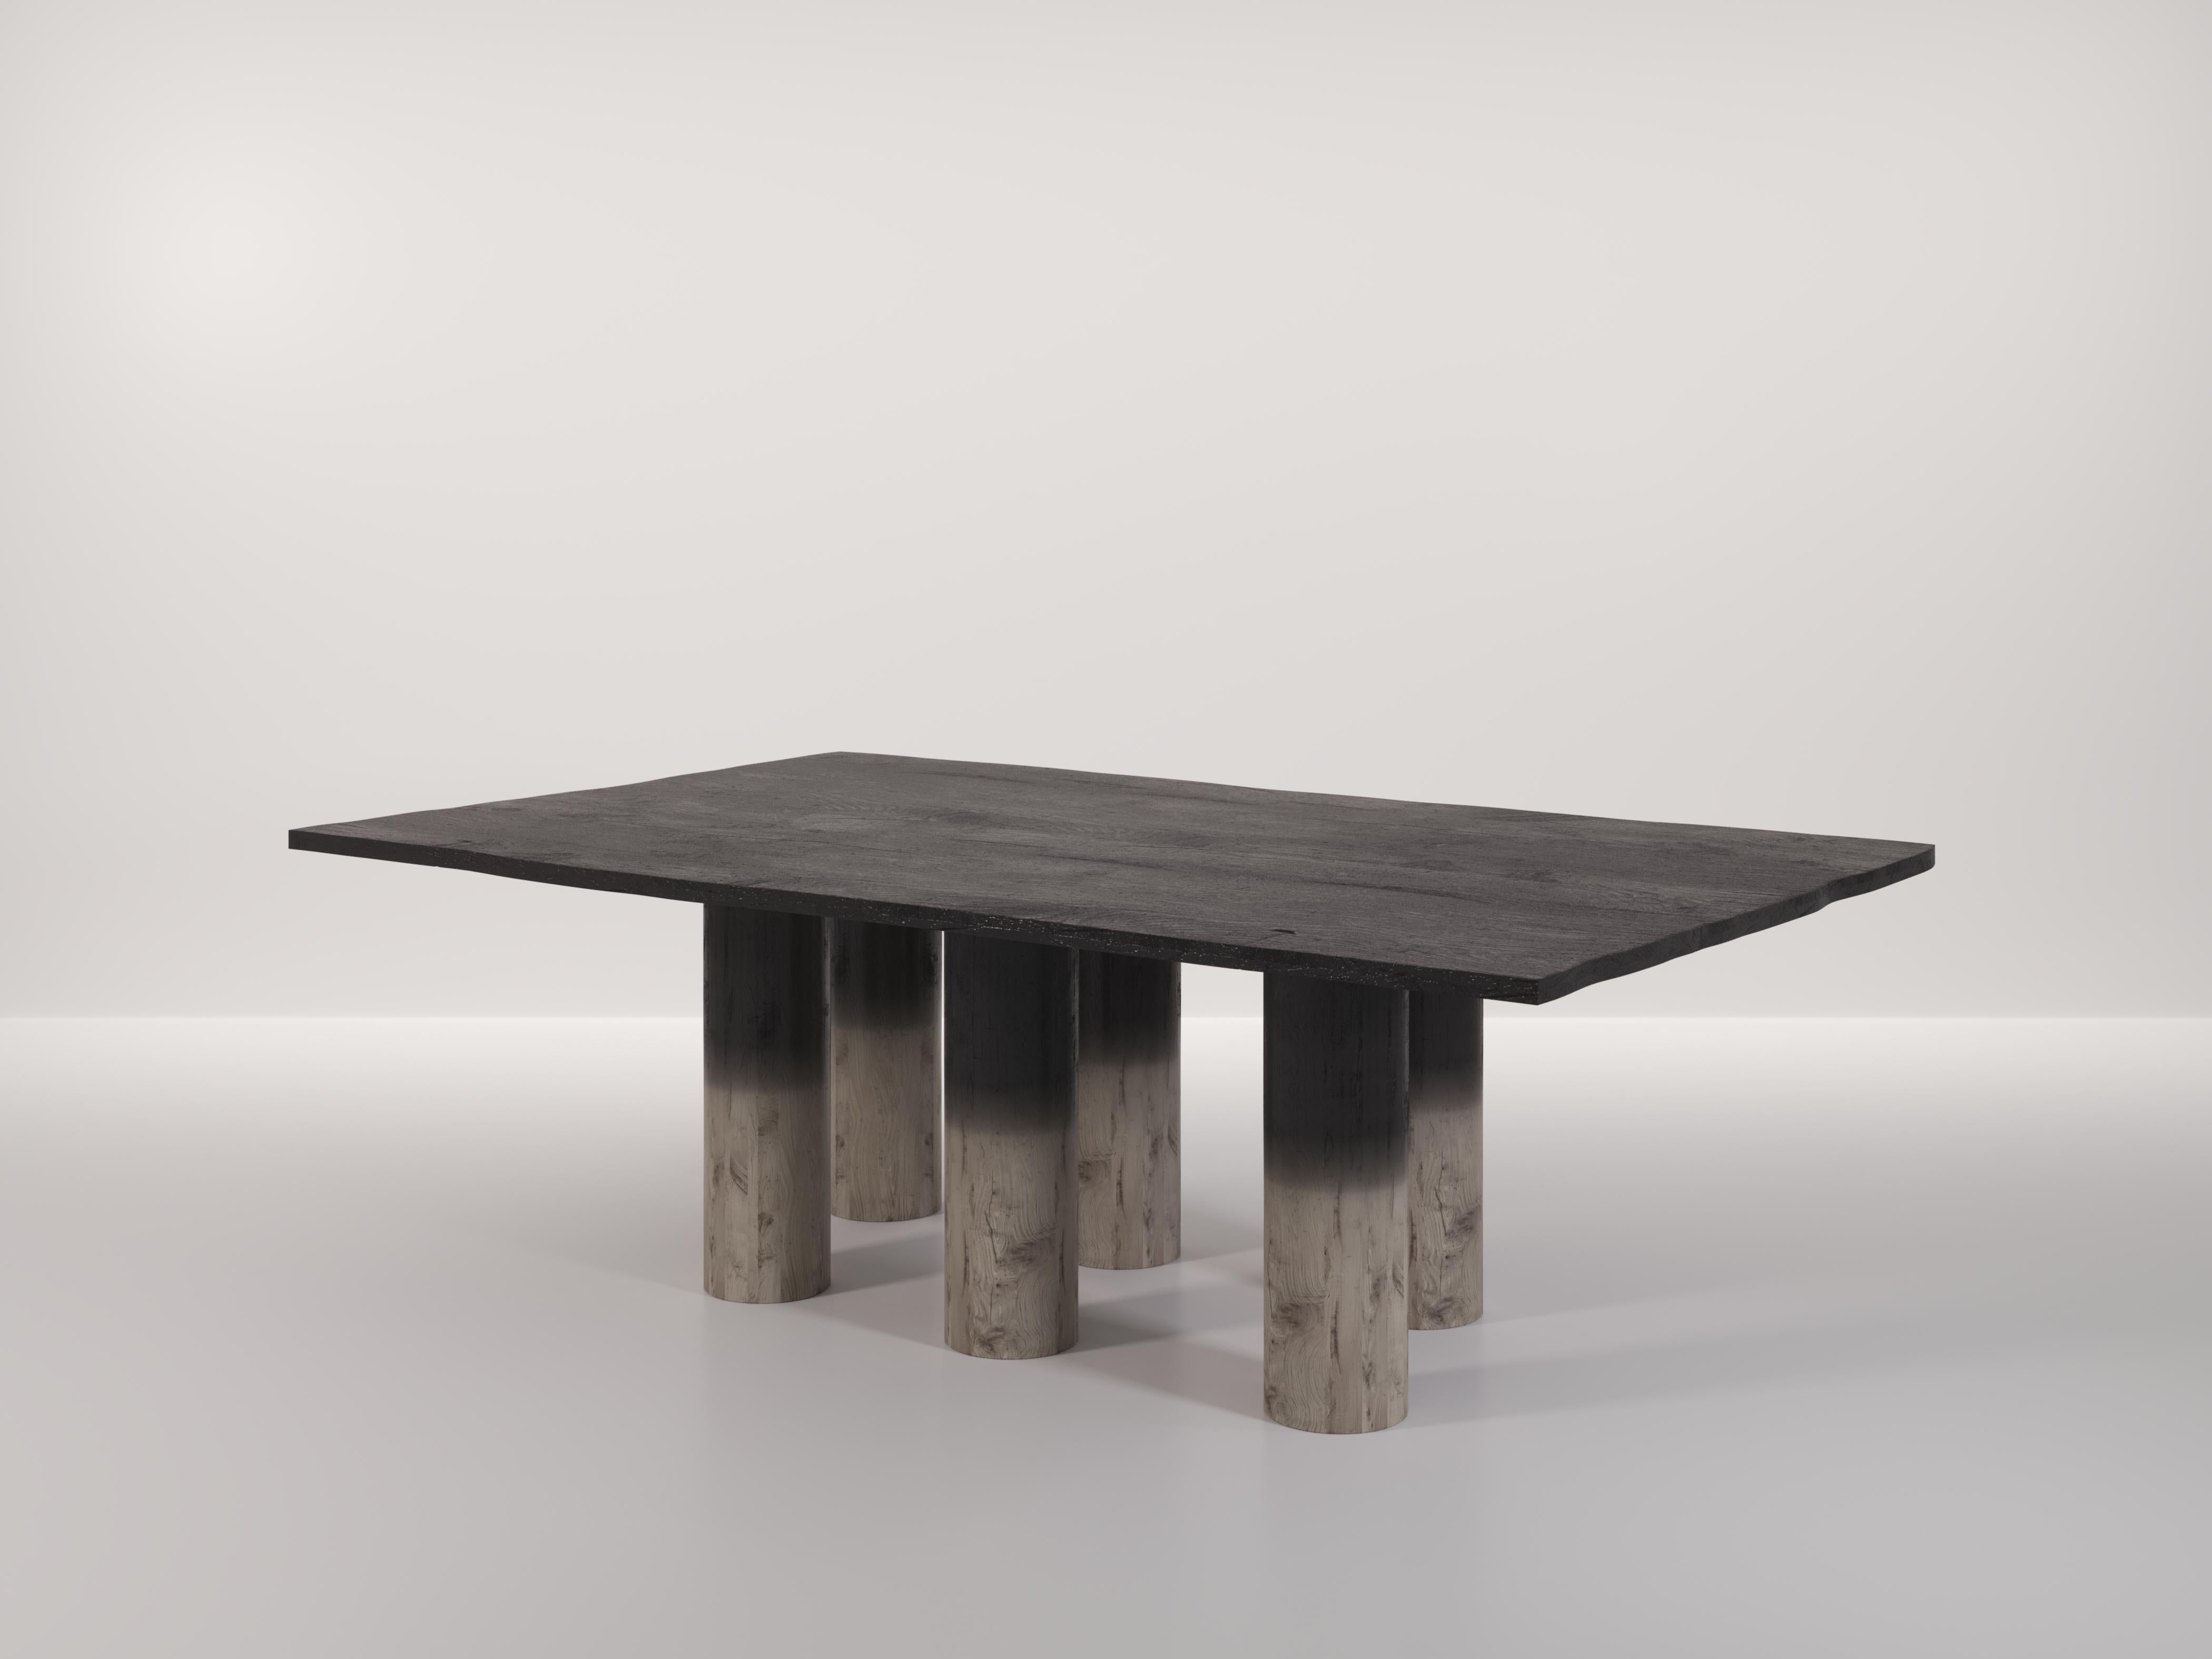 Der Roots-Tisch wurde entworfen, um die Wirkung der Verbrennung des Holzes zu zeigen. Bei der Behandlung des Holzes beendete das Studio Effe den Verbrennungsprozess schrittweise, je näher sie dem Boden kamen. Dadurch erhält das Stück einen